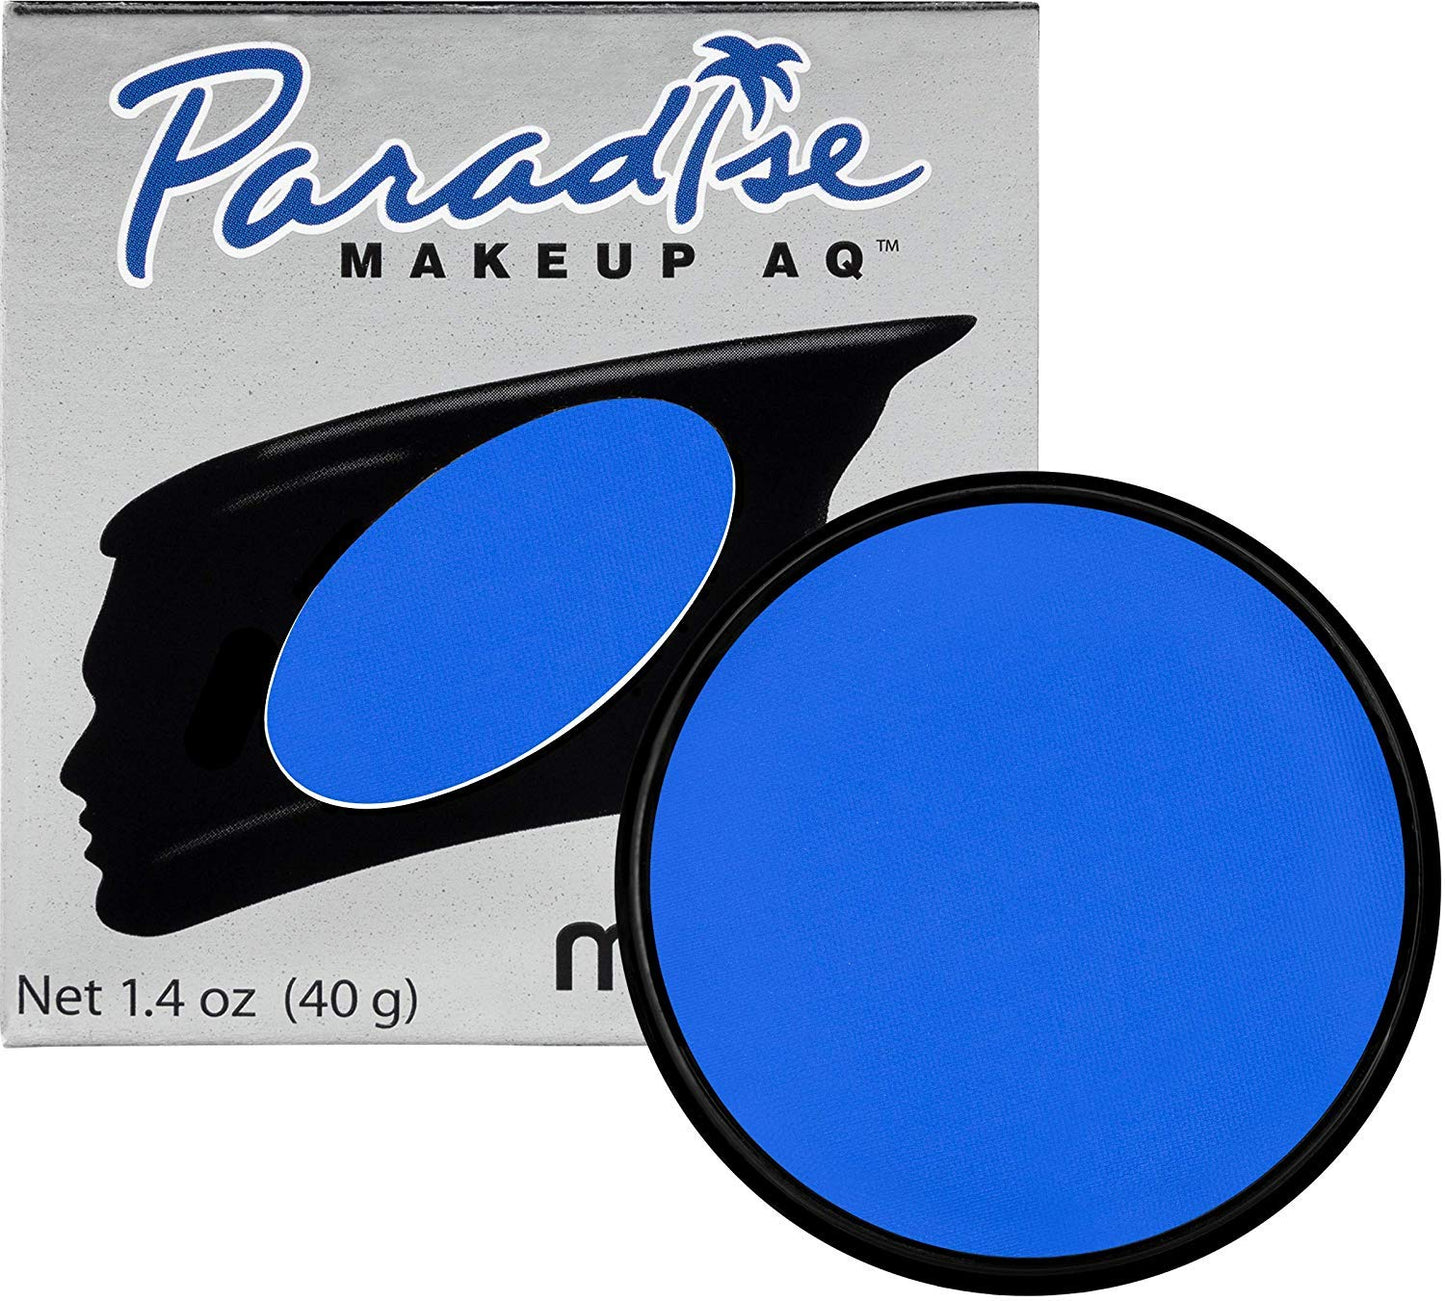 Paradise Makeup AQ 1.4 oz